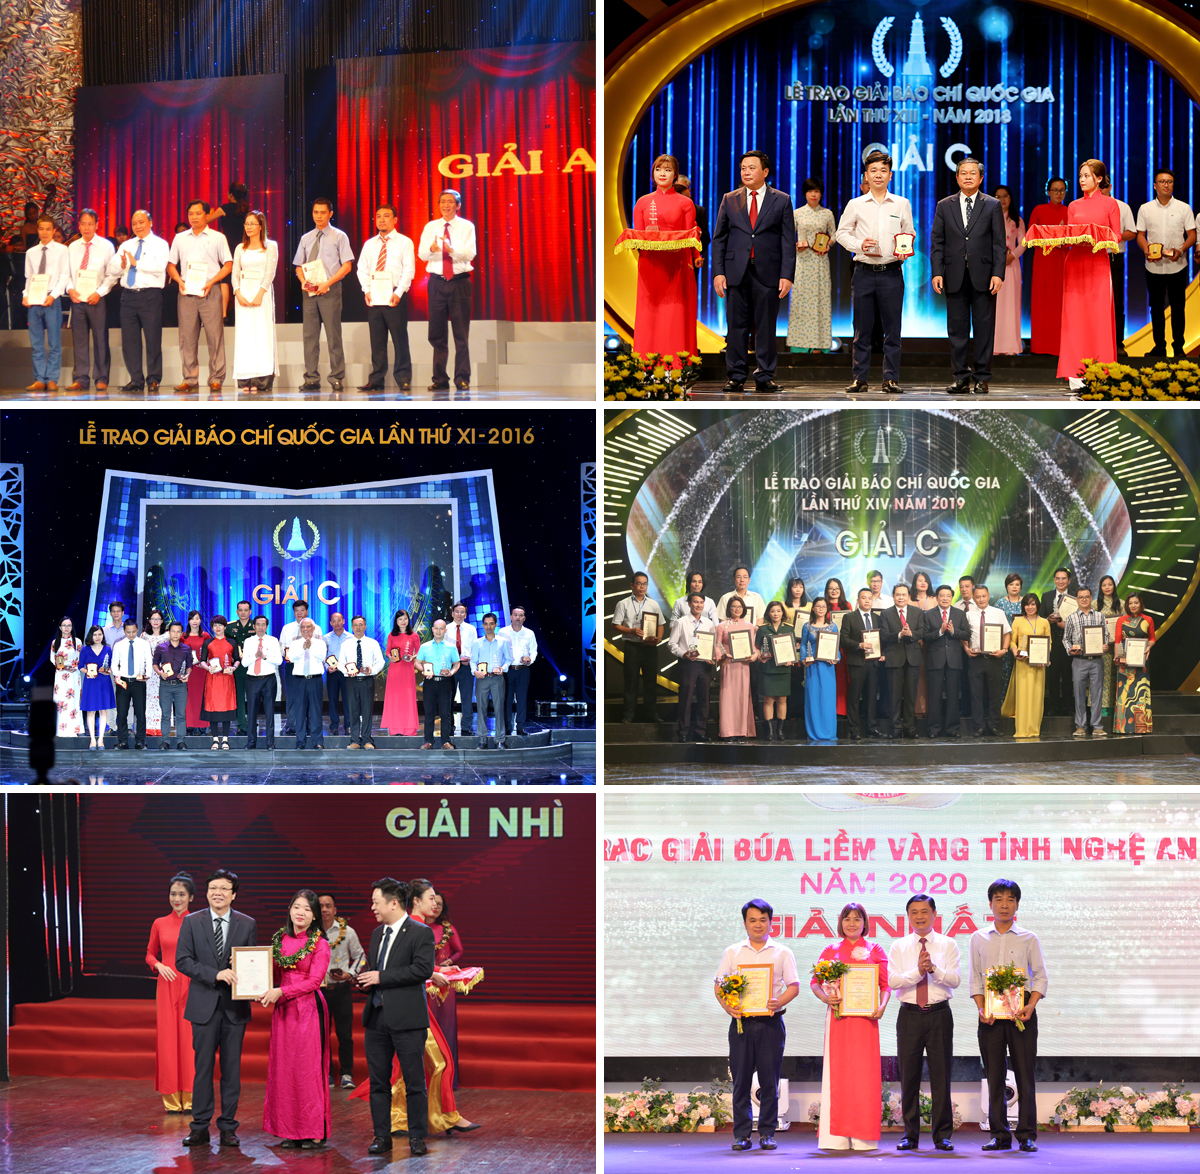 Phóng viên Báo Nghệ An đạt giải cao tại các cuộc thi giải báo chí Quốc gia, báo chí cấp tỉnh.